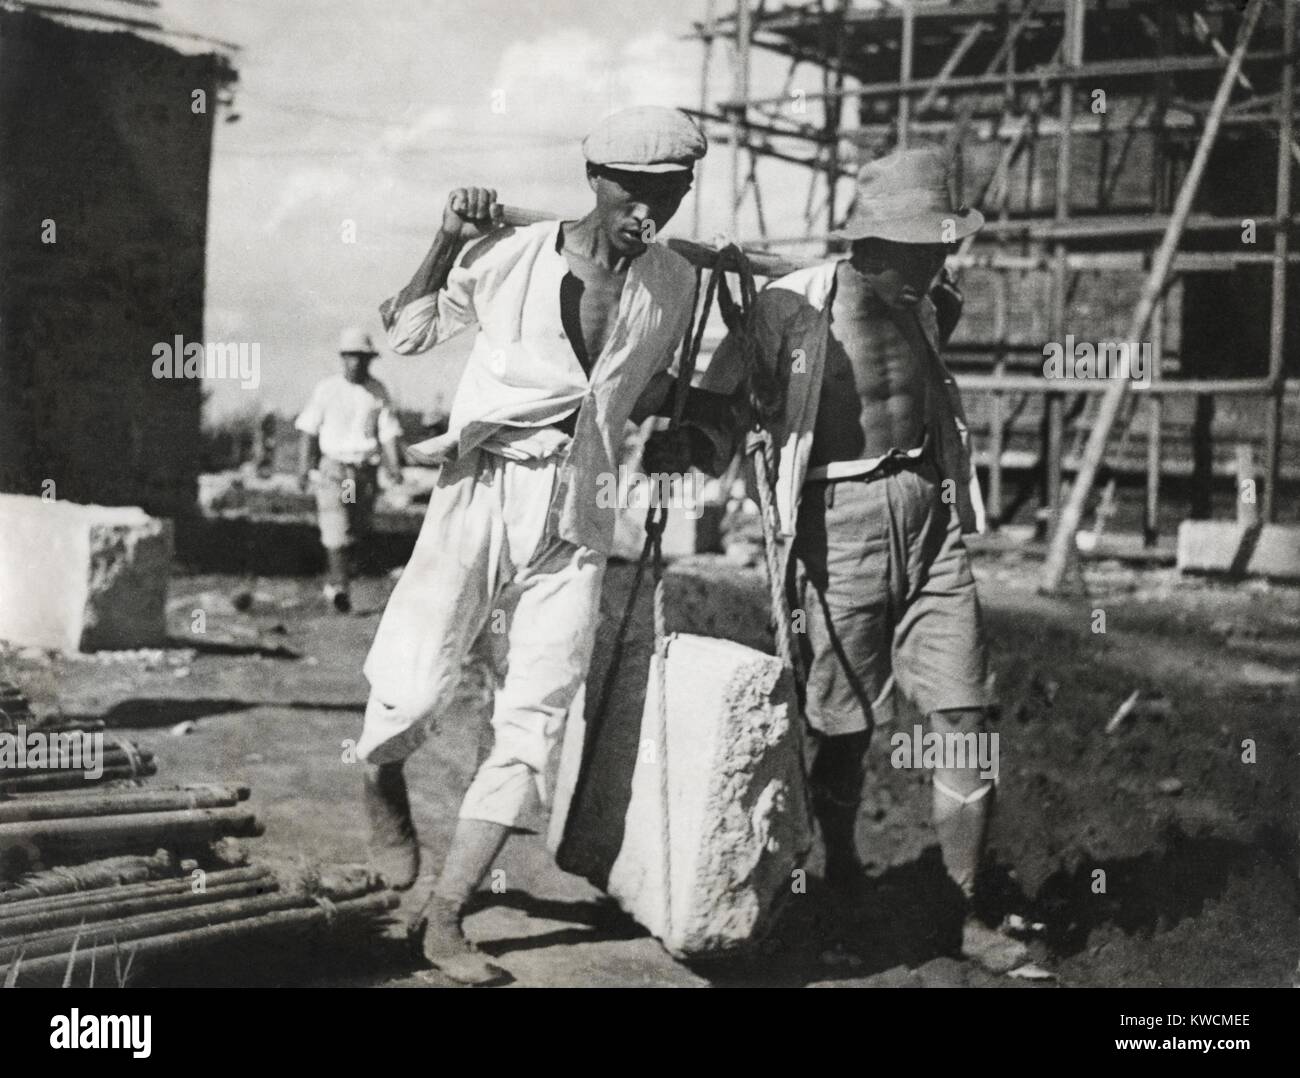 Zwei chinesische Männer arbeiten zusammen, um einen großen Stein auf einer Baustelle leben. Sie verwenden traditionellen vorindustriellen Hebetechniken. Ca. 1930-40 s. - (BSLOC 2014 15 151) Stockfoto